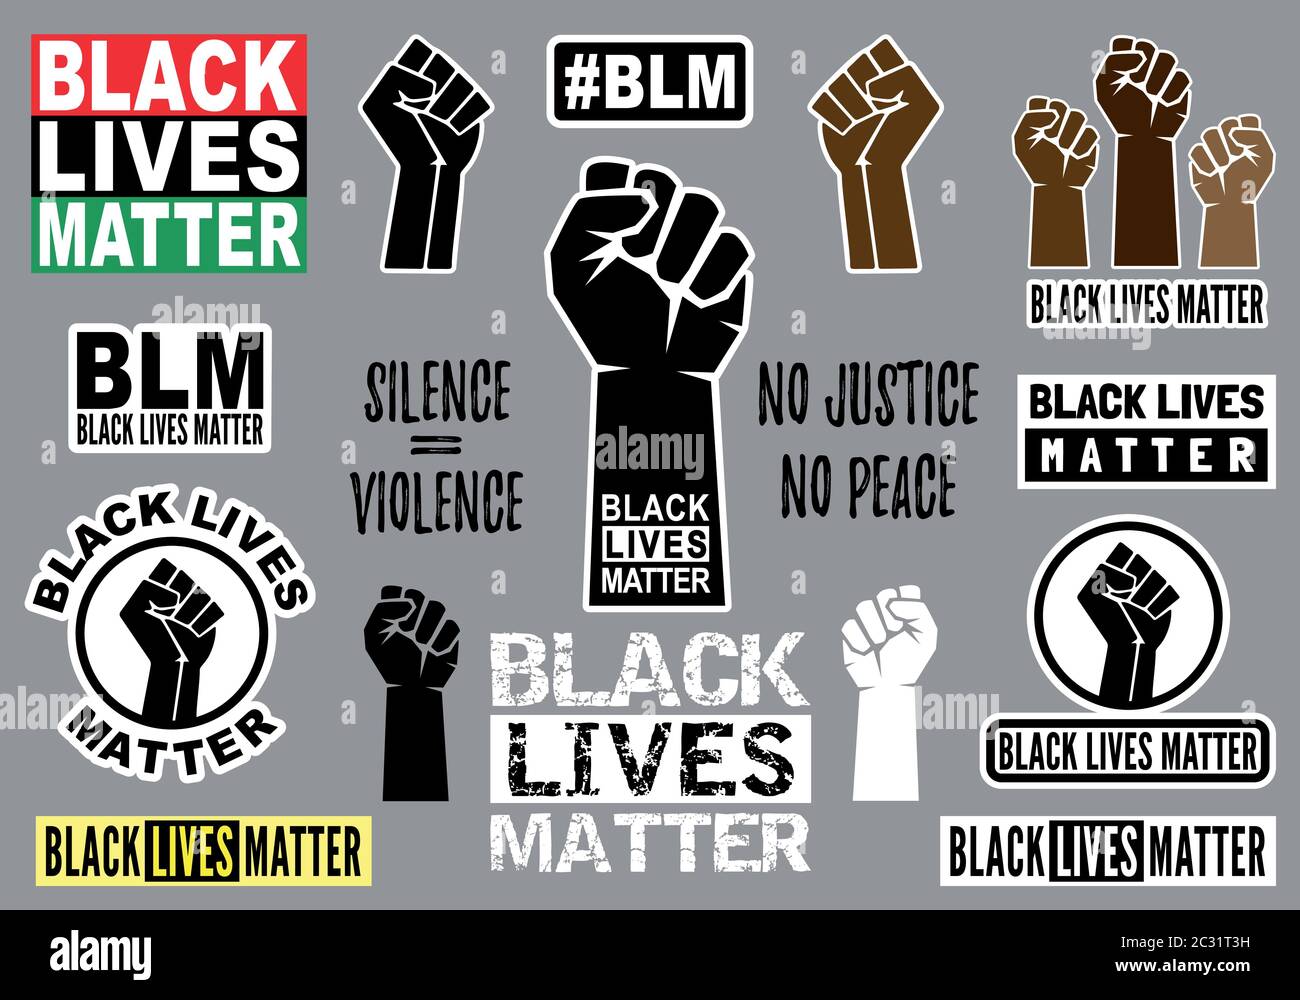 Les vies noires comptent, l'autocollant de poing, l'affiche de mains de combat, la protestation contre le racisme, ensemble d'éléments graphiques vectoriels Illustration de Vecteur